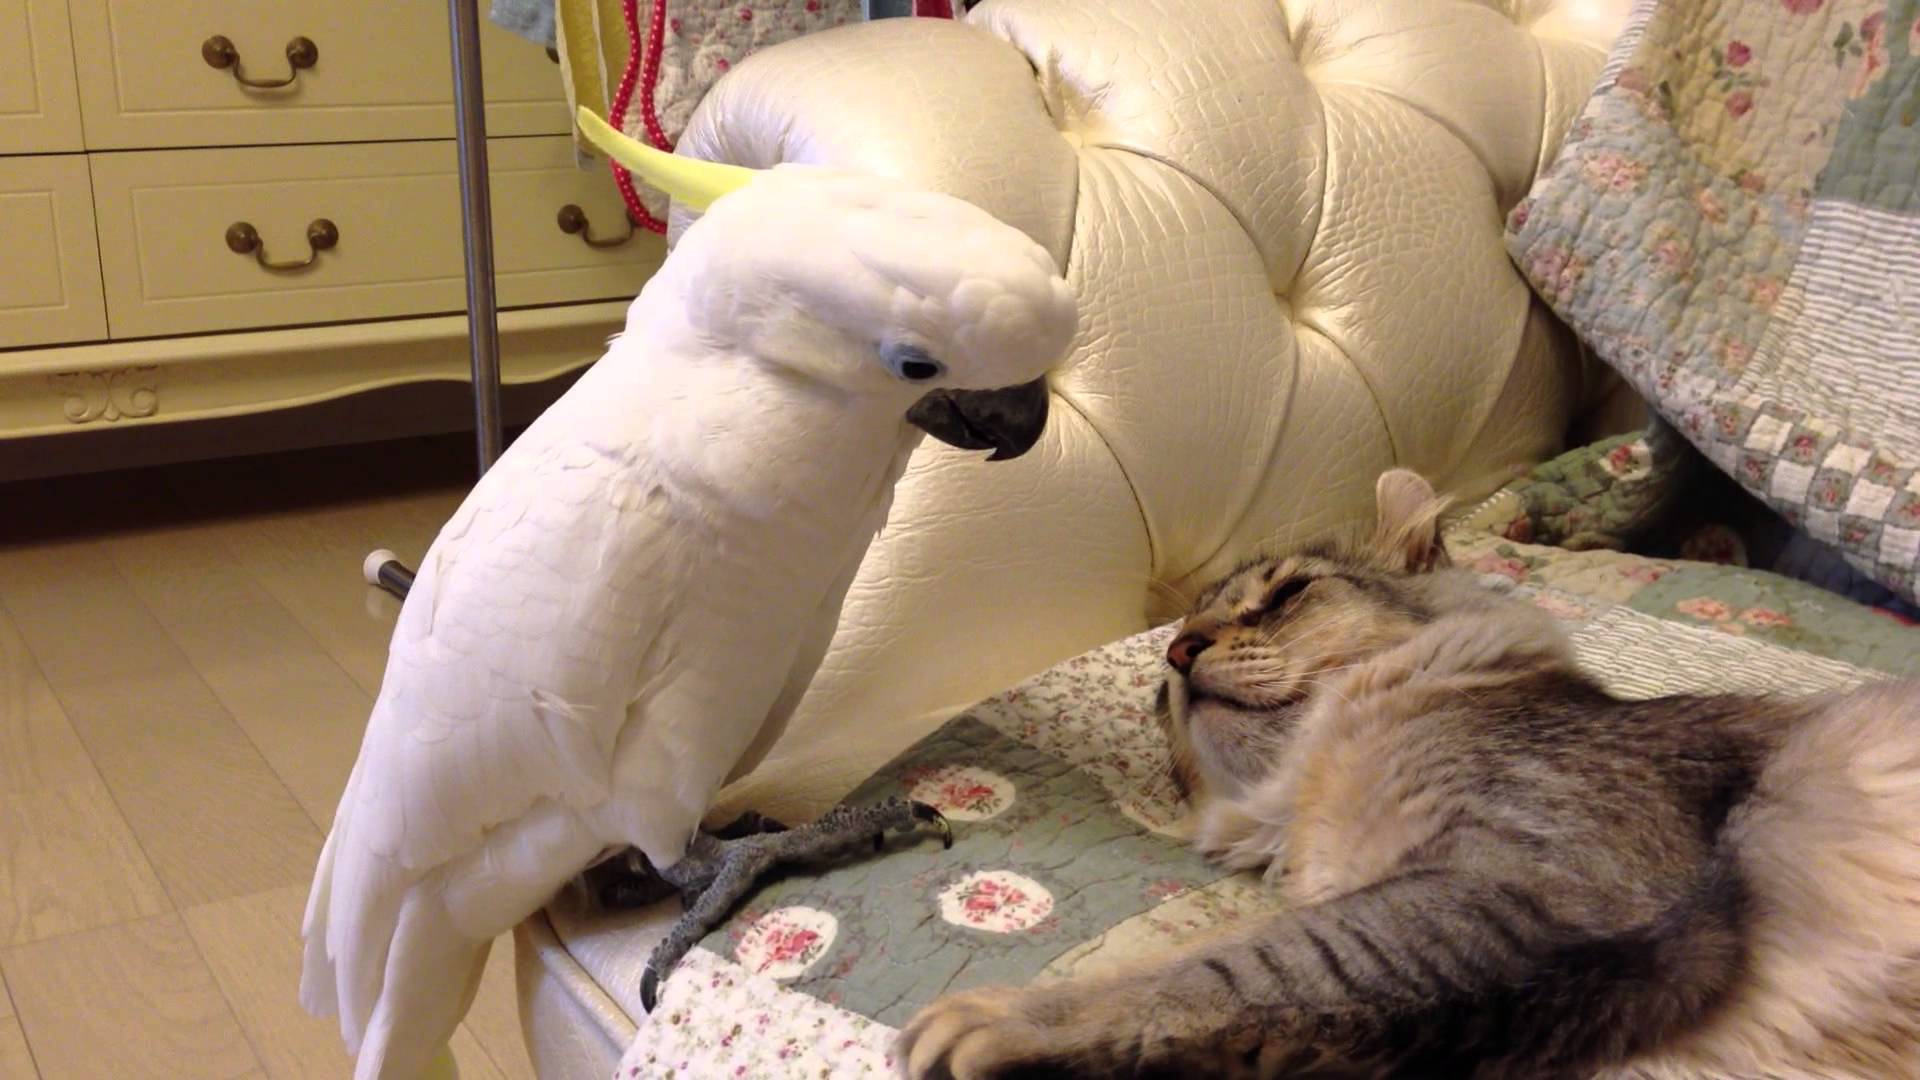 VIDEO: Kakadū negaidītais skūpsts… kaķim! (Cacatuidae trying to kiss cat!)